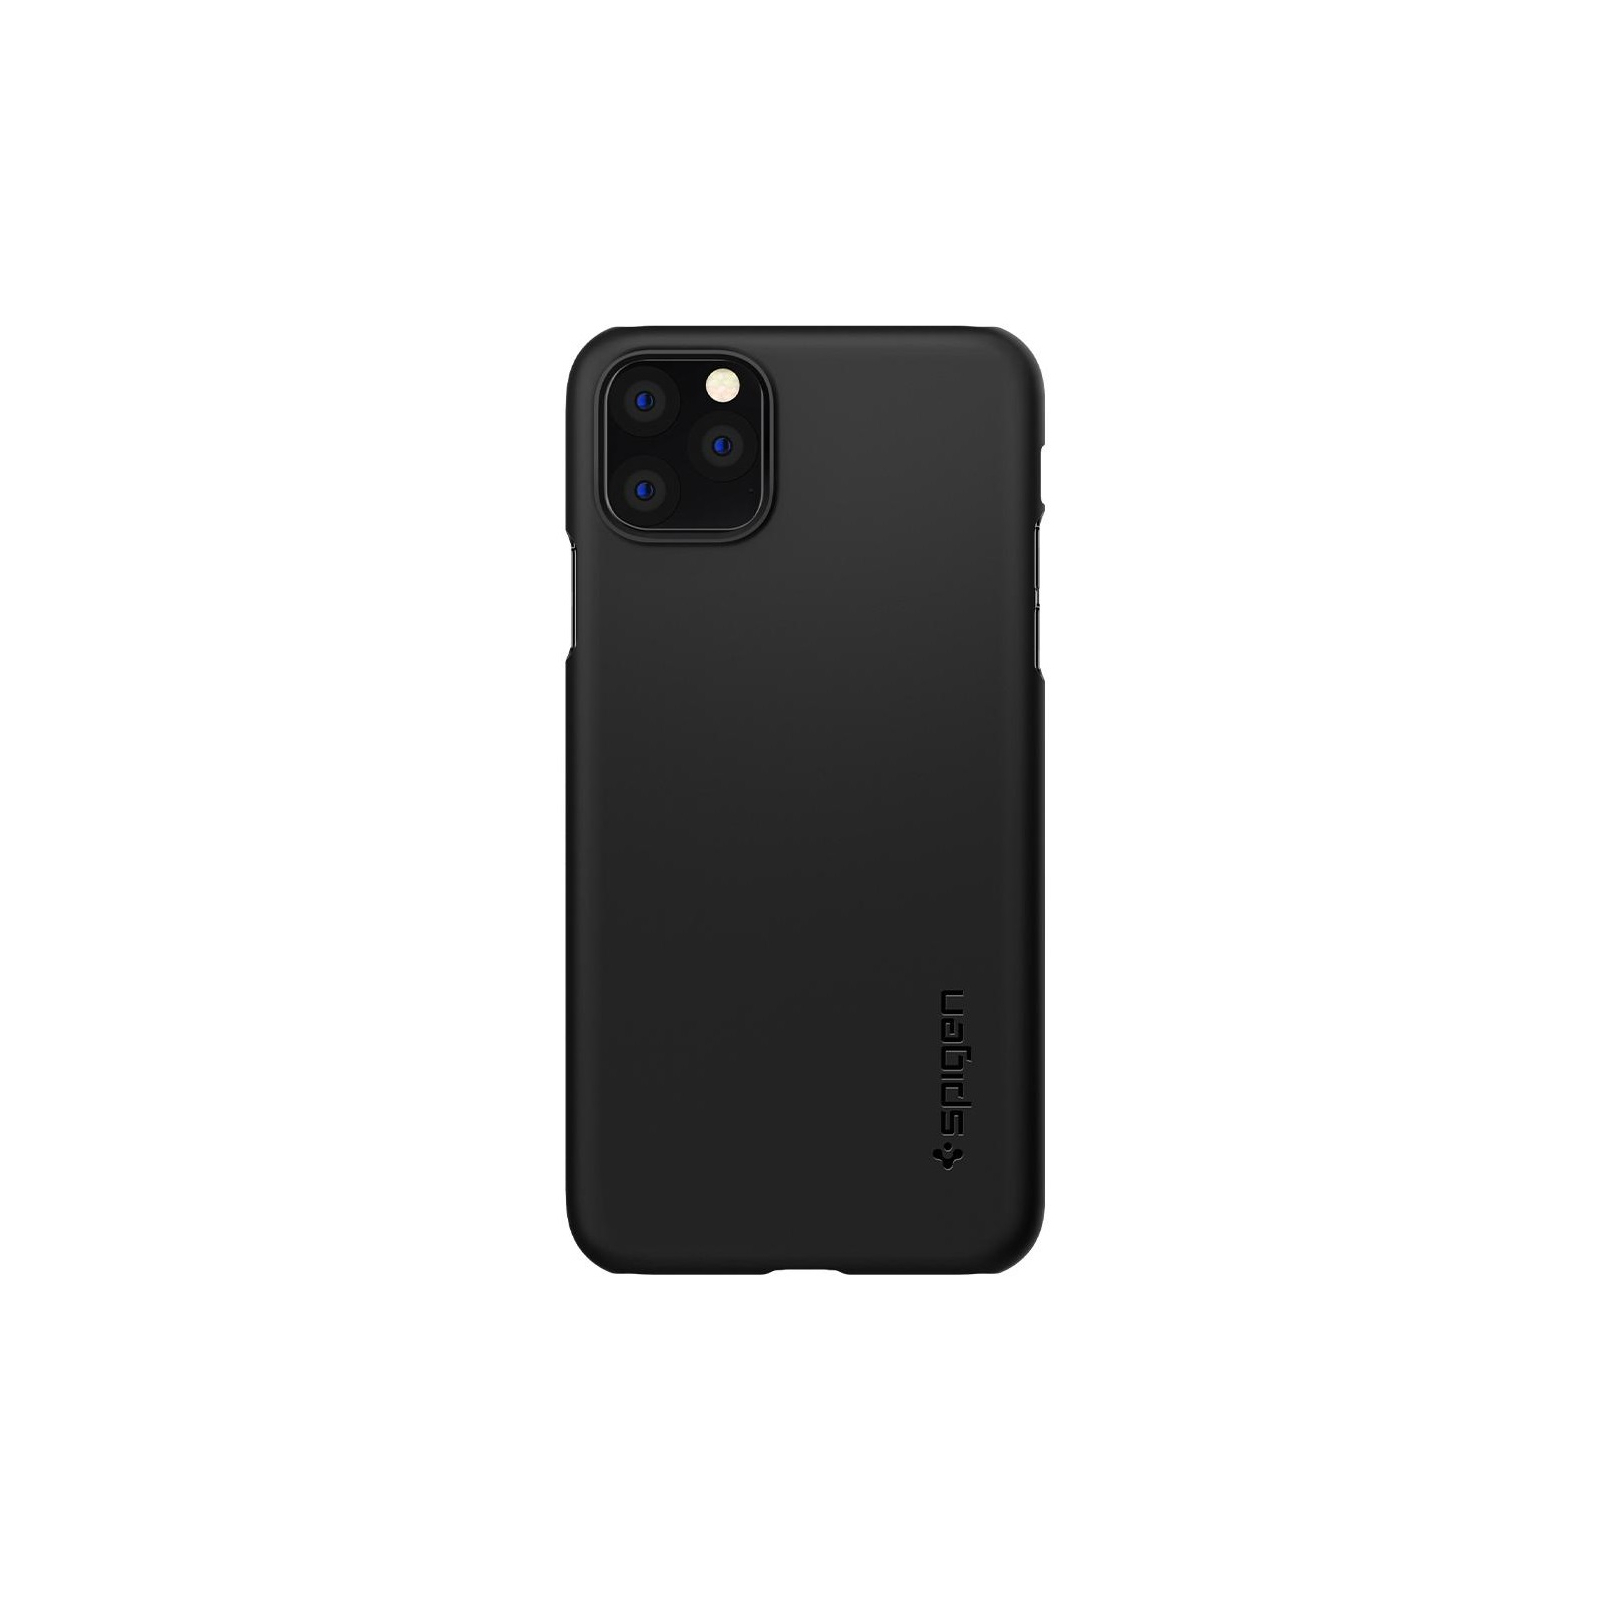 Чехол для мобильного телефона Spigen iPhone 11 Pro Thin Fit, Black (077CS27225)